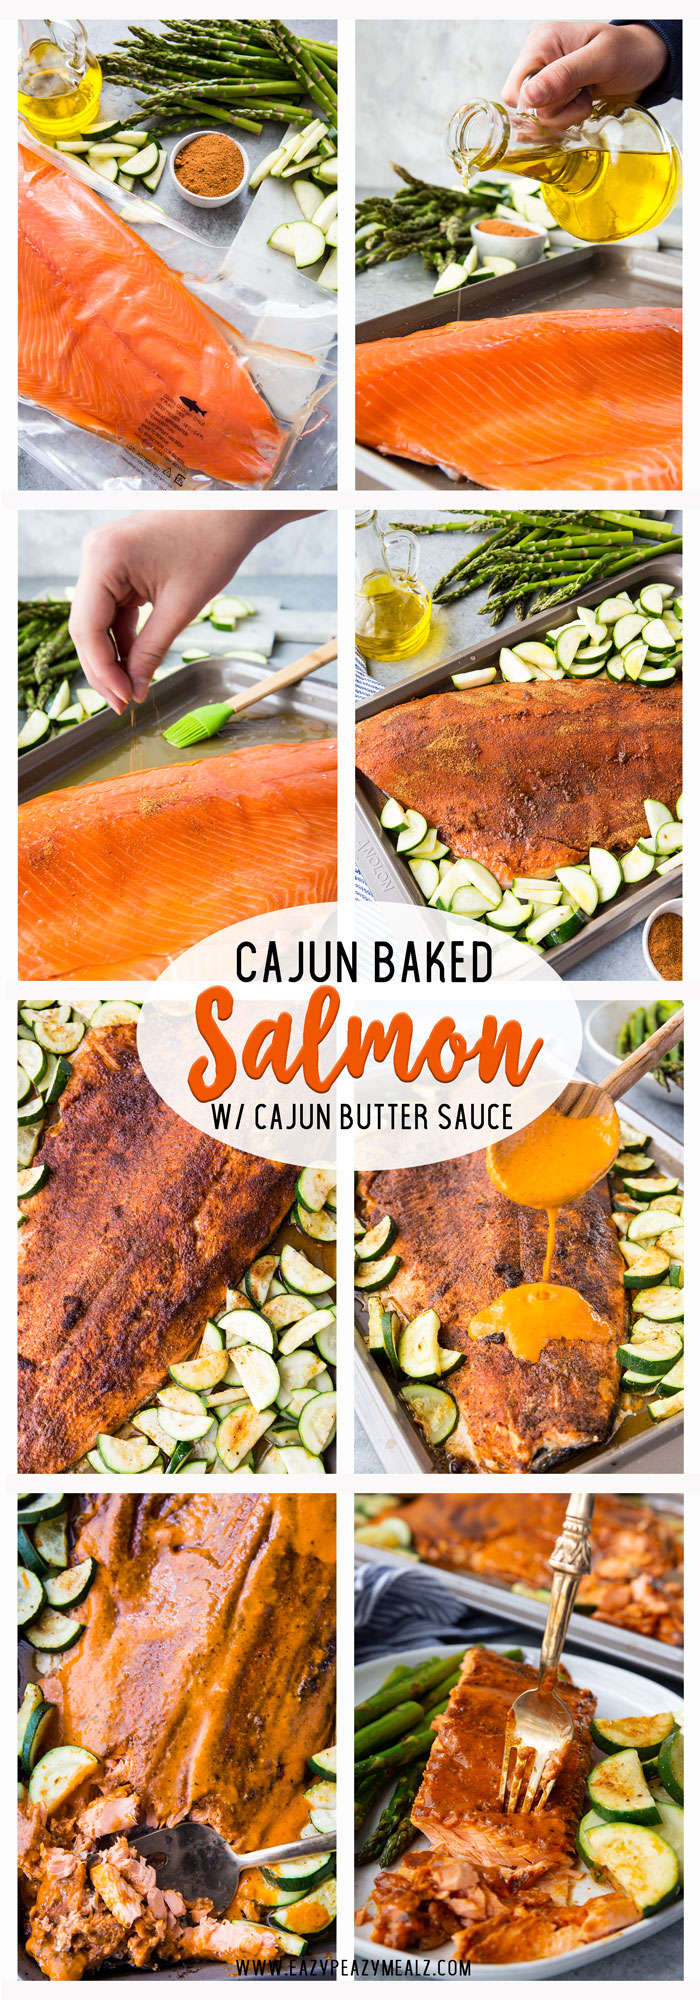 Cajun baked salmon with a cajun butter sauce, a complete sheet pan meal